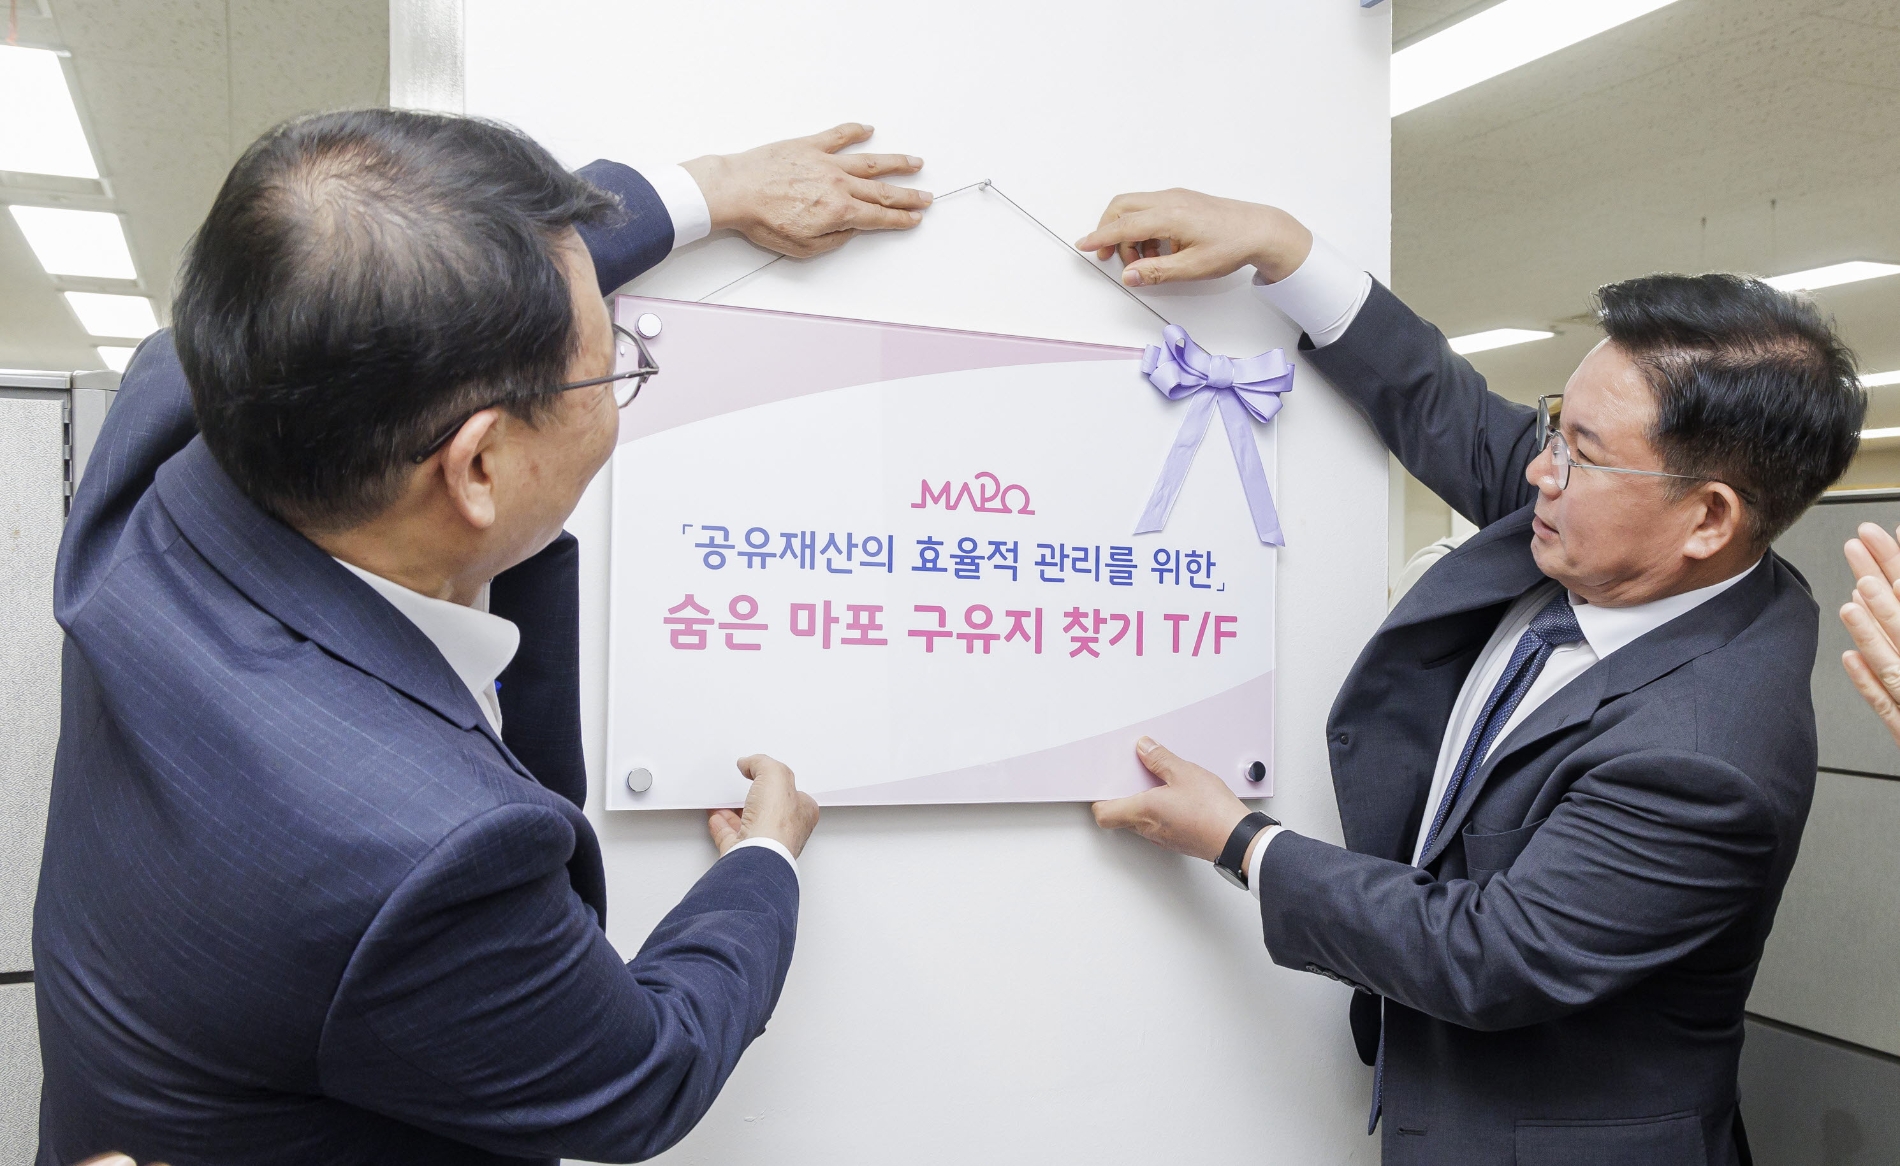 박강수 마포구청장(오른쪽)이 지난 5월11일 '숨은 구유지 찾기 현판식' 기념행사에 참석한 모습./사진제공=마포구